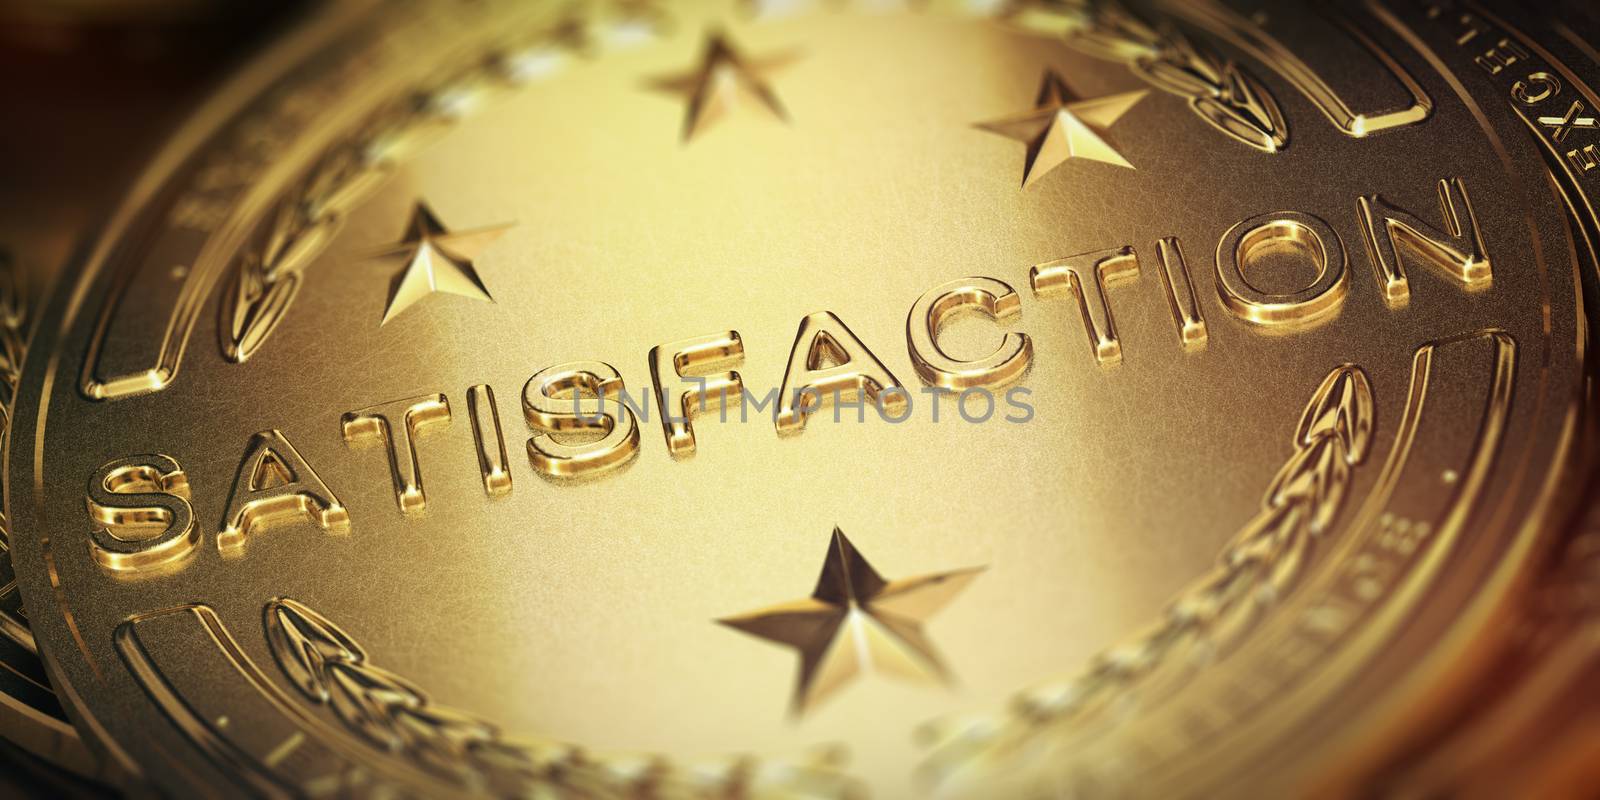 Successful customer satisfaction management. Golden medal, 3D illustration